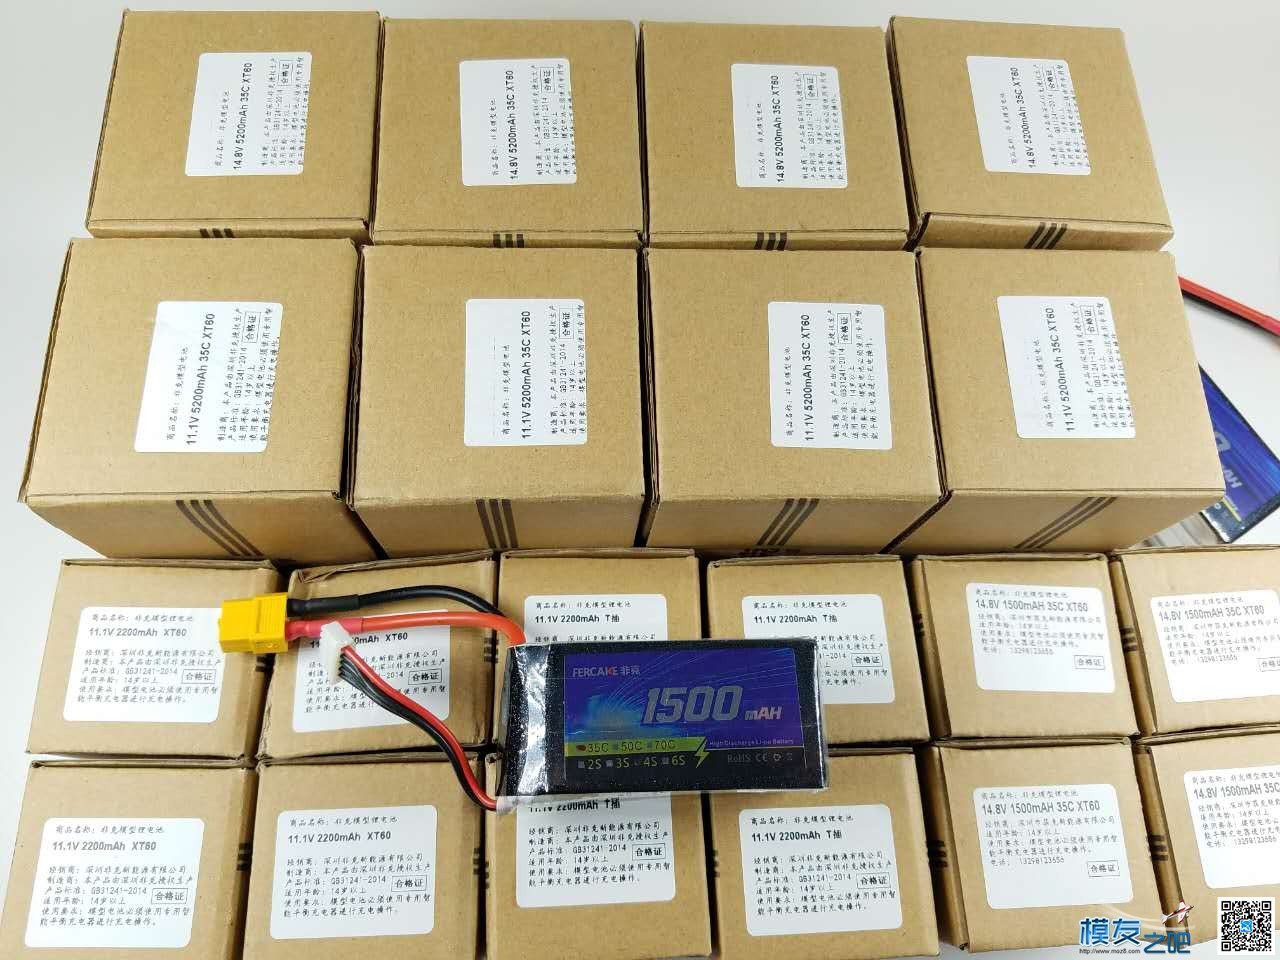 非克电池测试体验活动 电池,非克汽车02,taobao 作者:飞天狼 8090 